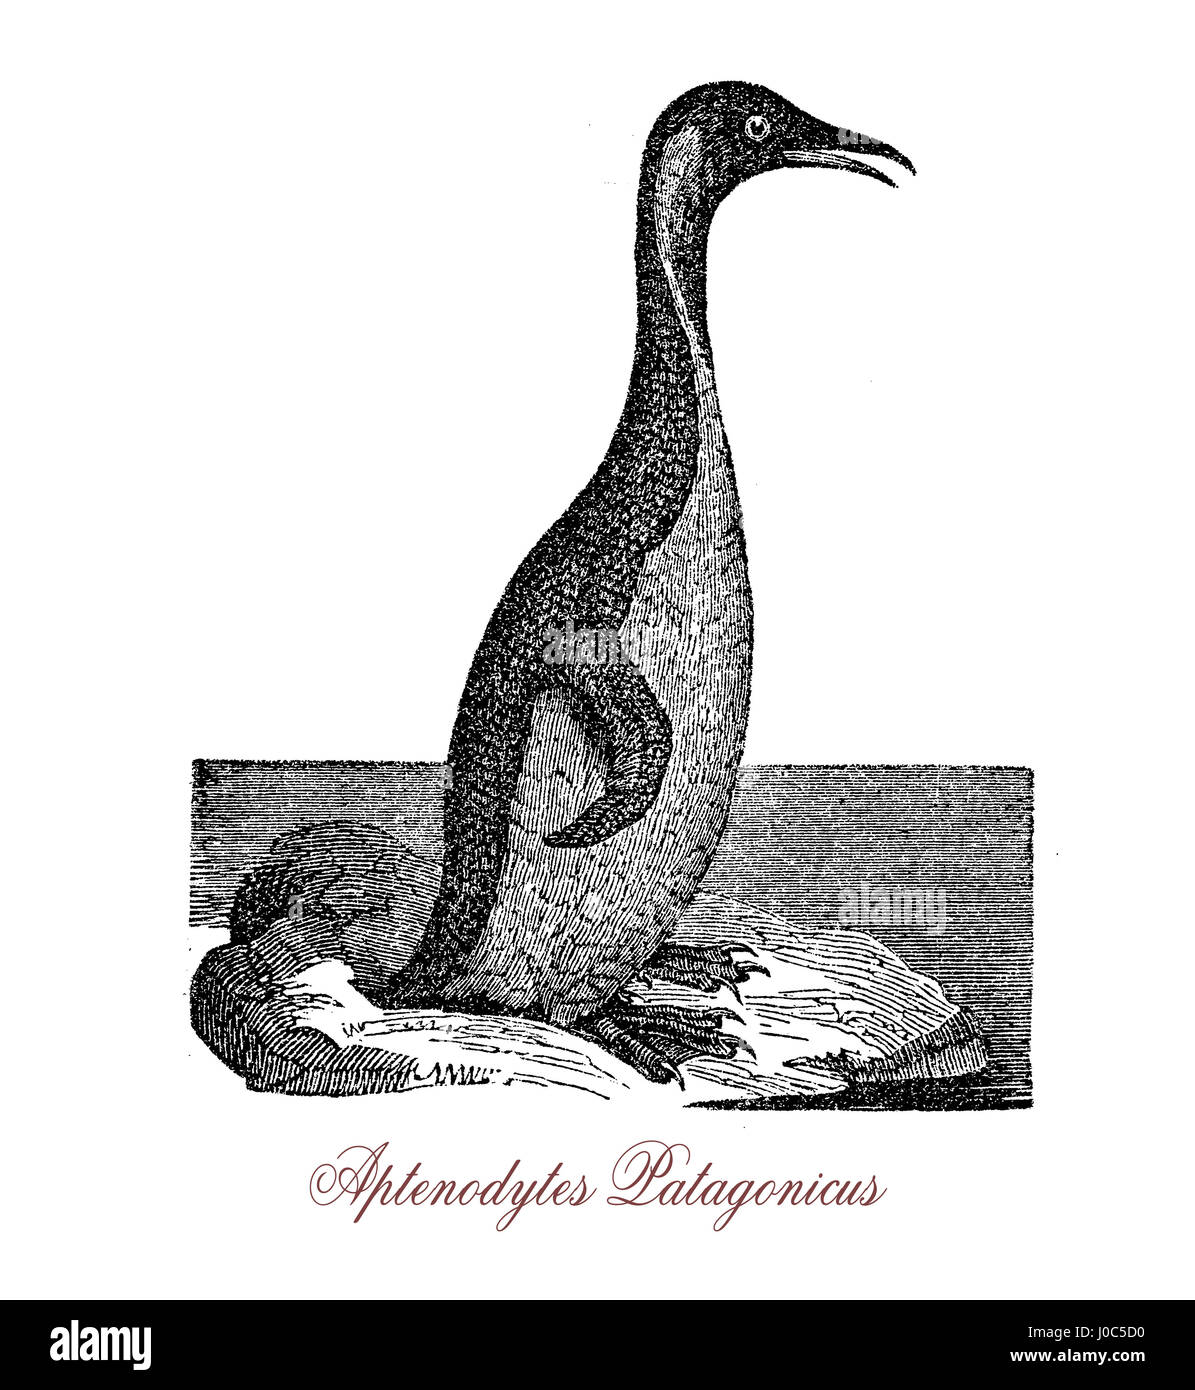 El pingüino rey (Aptenodytes patagonicus) es una especie grande de pingüino, en segundo lugar solamente a los pingüinos emperador en tamaño. Foto de stock